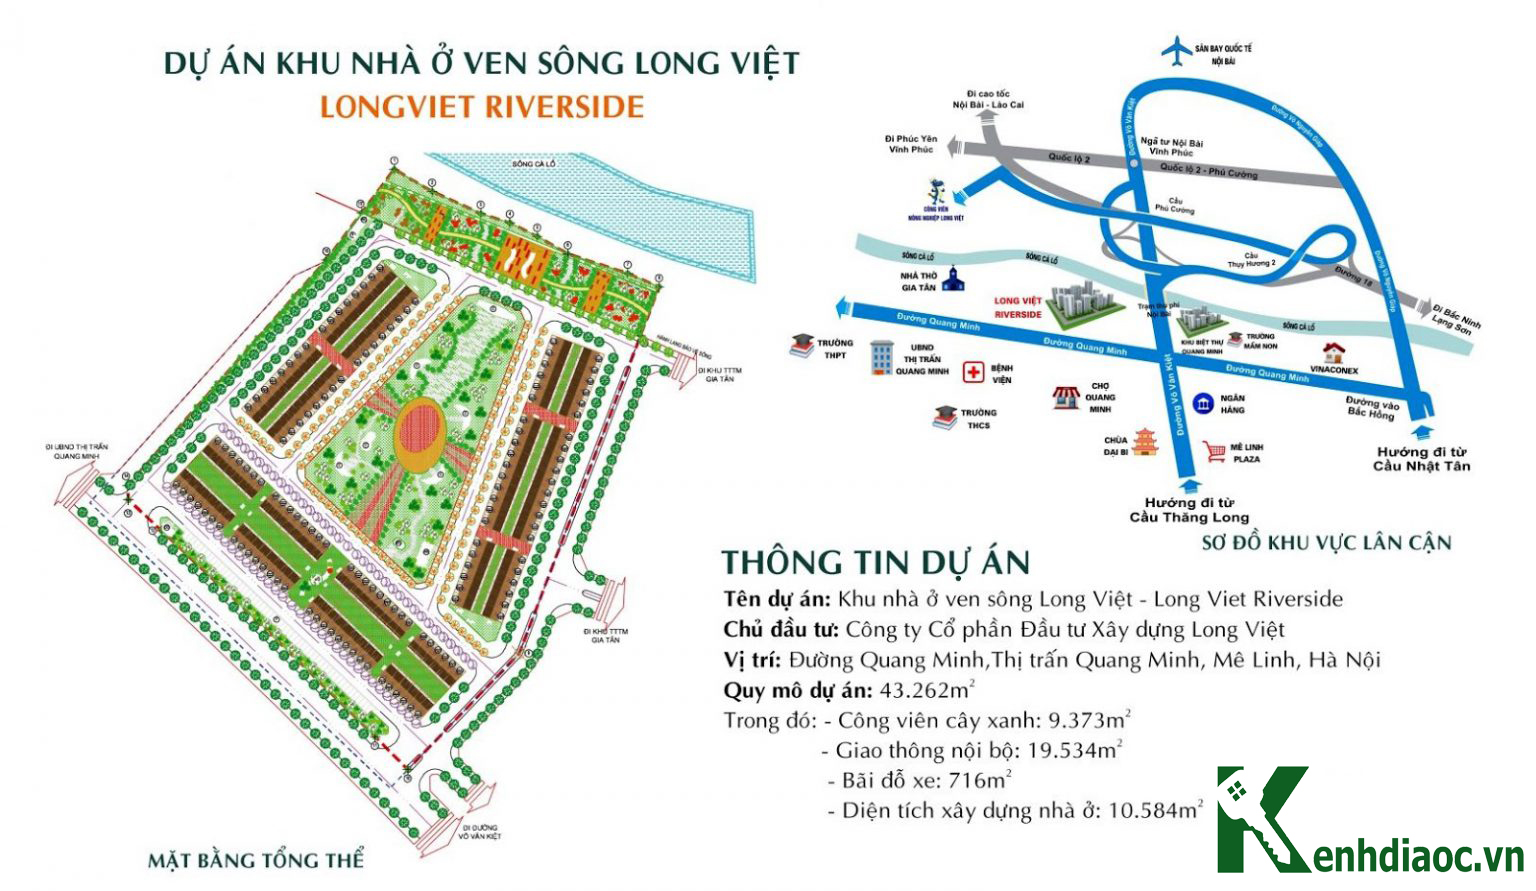 kenhdiaoc.vn - Kênh Thông Tin Bất Động Sản Việt Nam